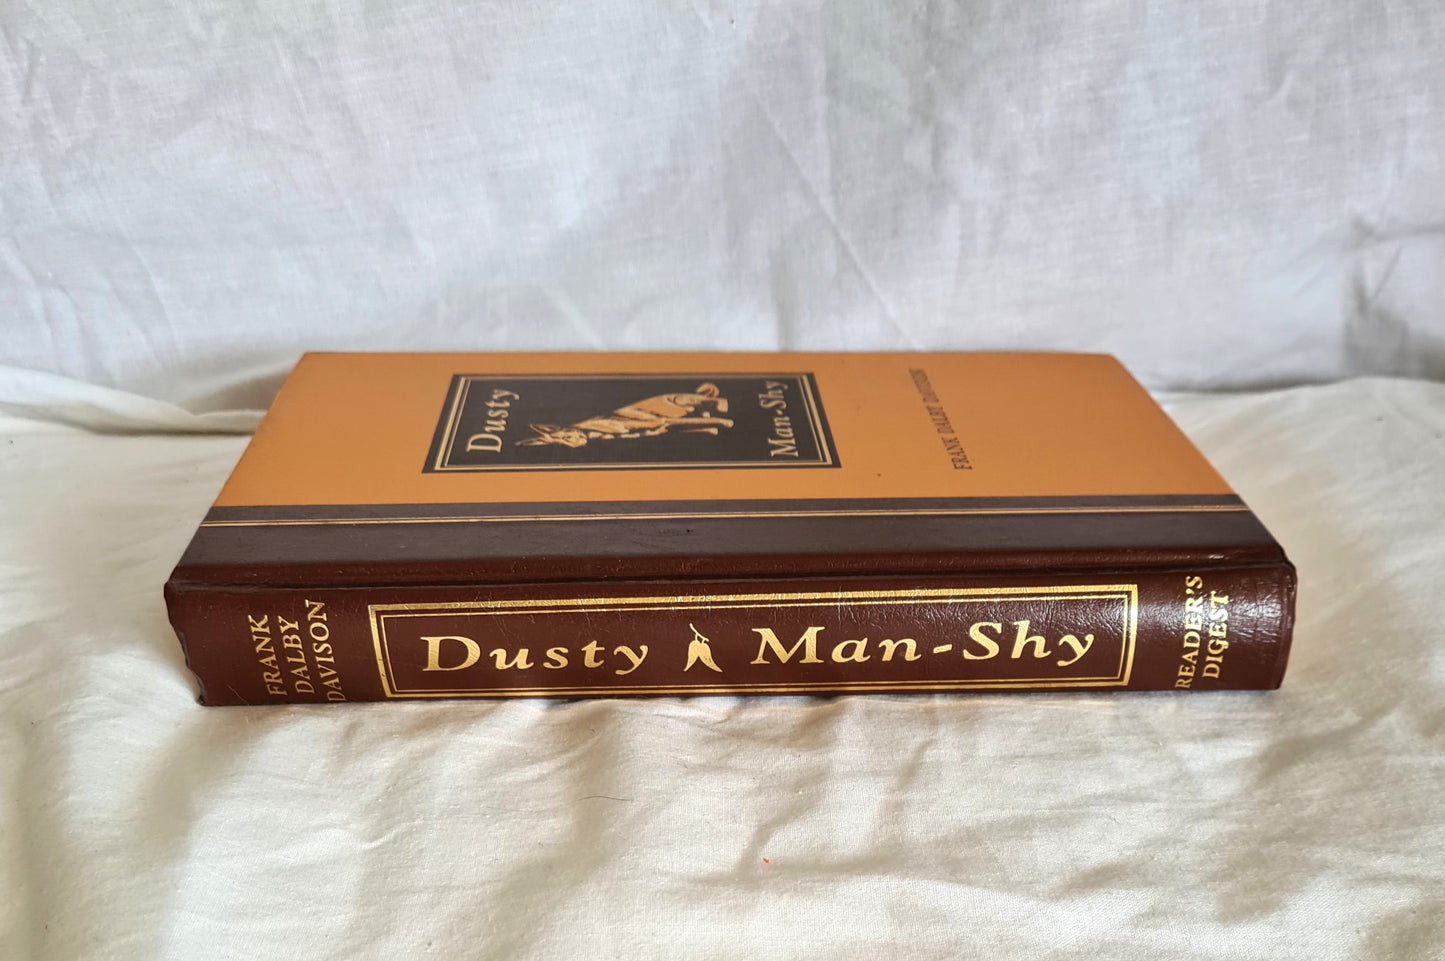 Dusty ~ Man-Shy by Frank Dalby Davison